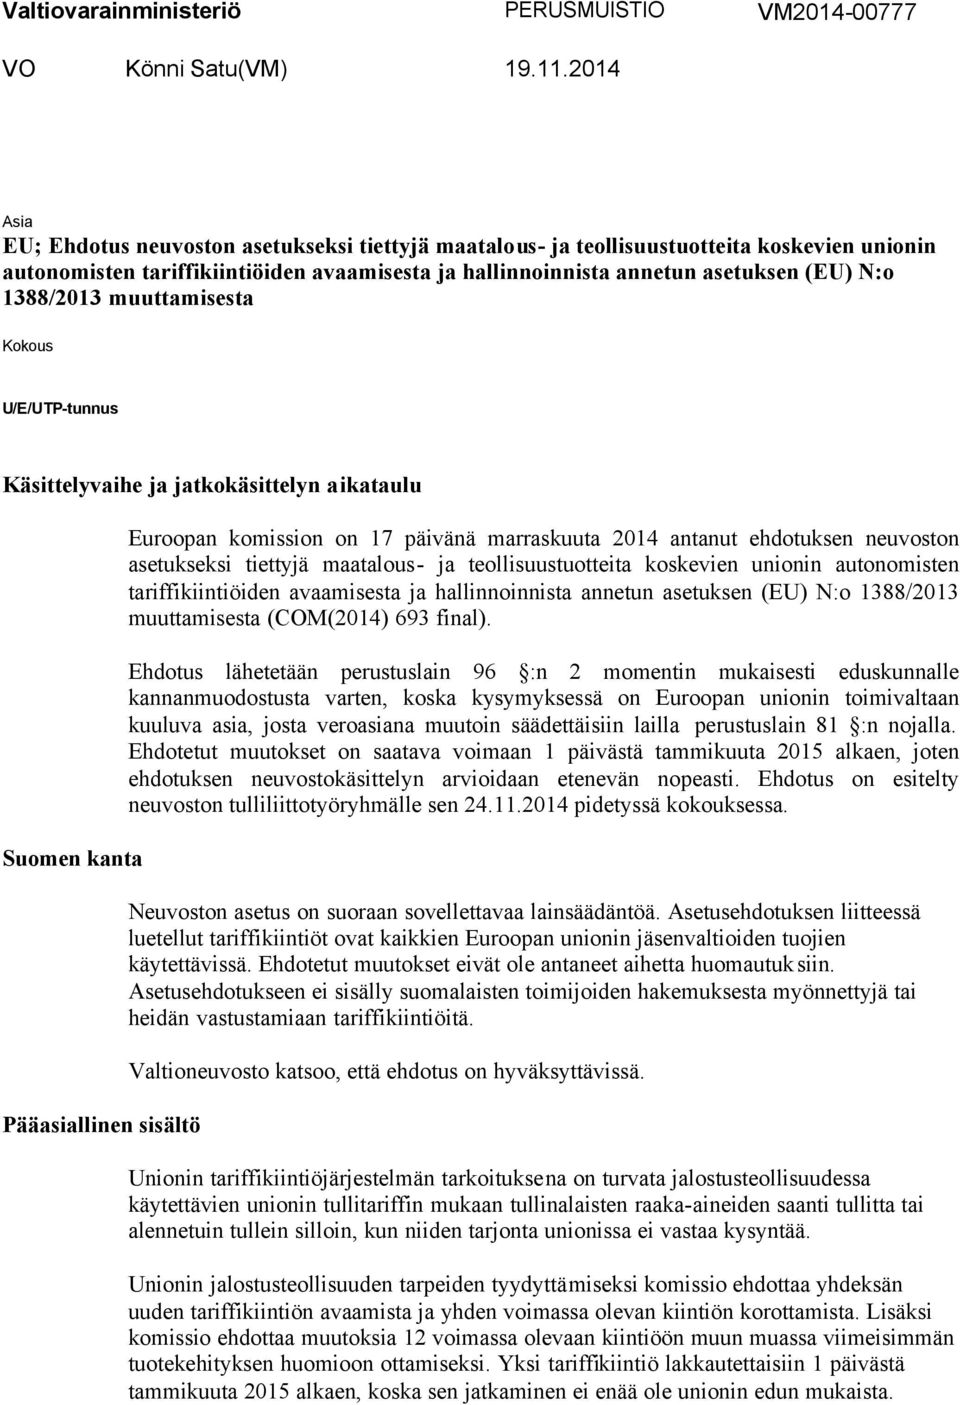 1388/2013 muuttamisesta Kokous U/E/UTP-tunnus Käsittelyvaihe ja jatkokäsittelyn aikataulu Suomen kanta Pääasiallinen sisältö Euroopan komission on 17 päivänä marraskuuta 2014 antanut ehdotuksen